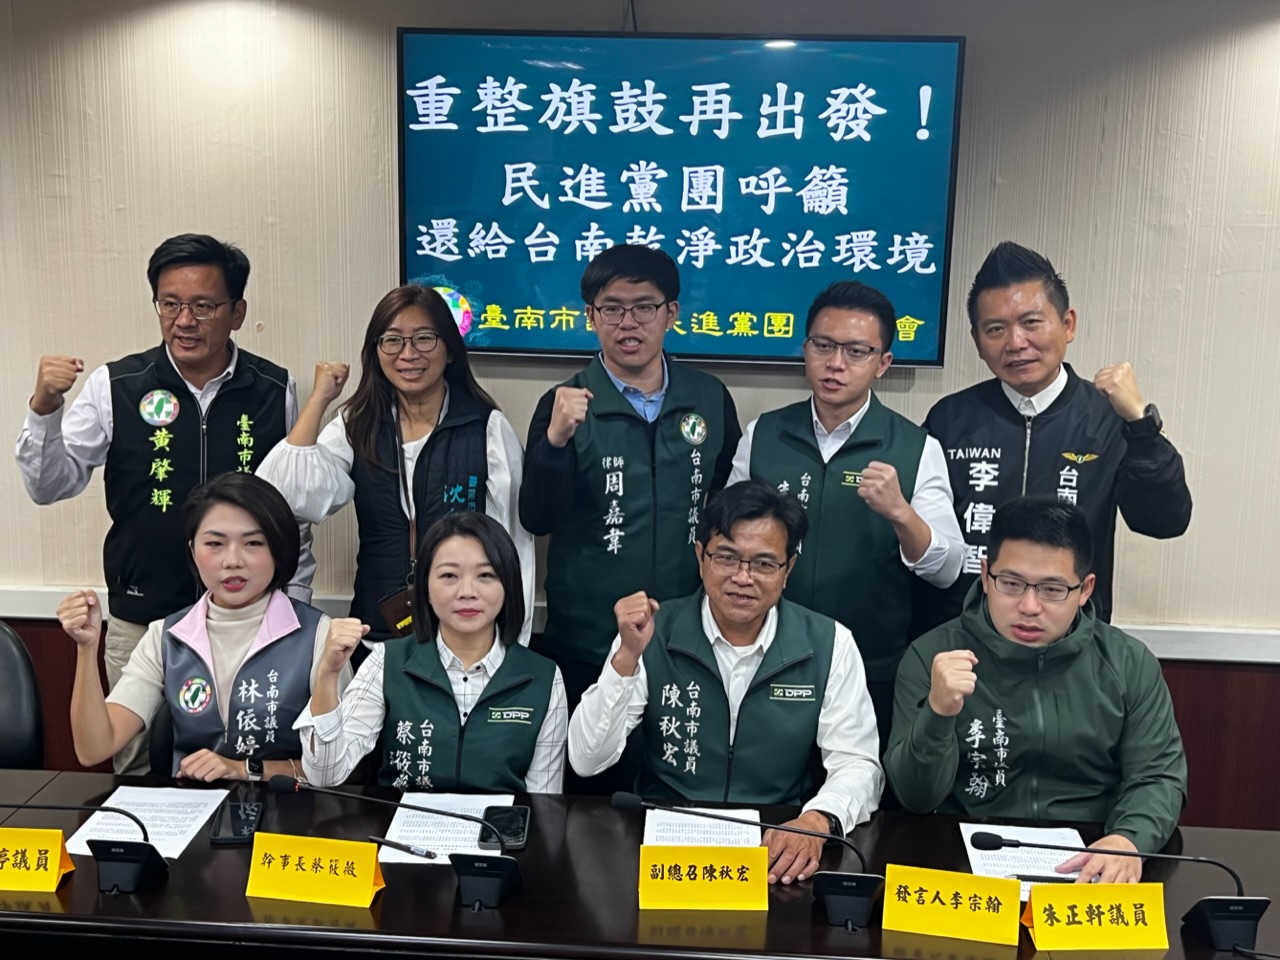 重整旗鼓、重新出發  台南市民進黨團呼籲還給台南乾淨政治環境